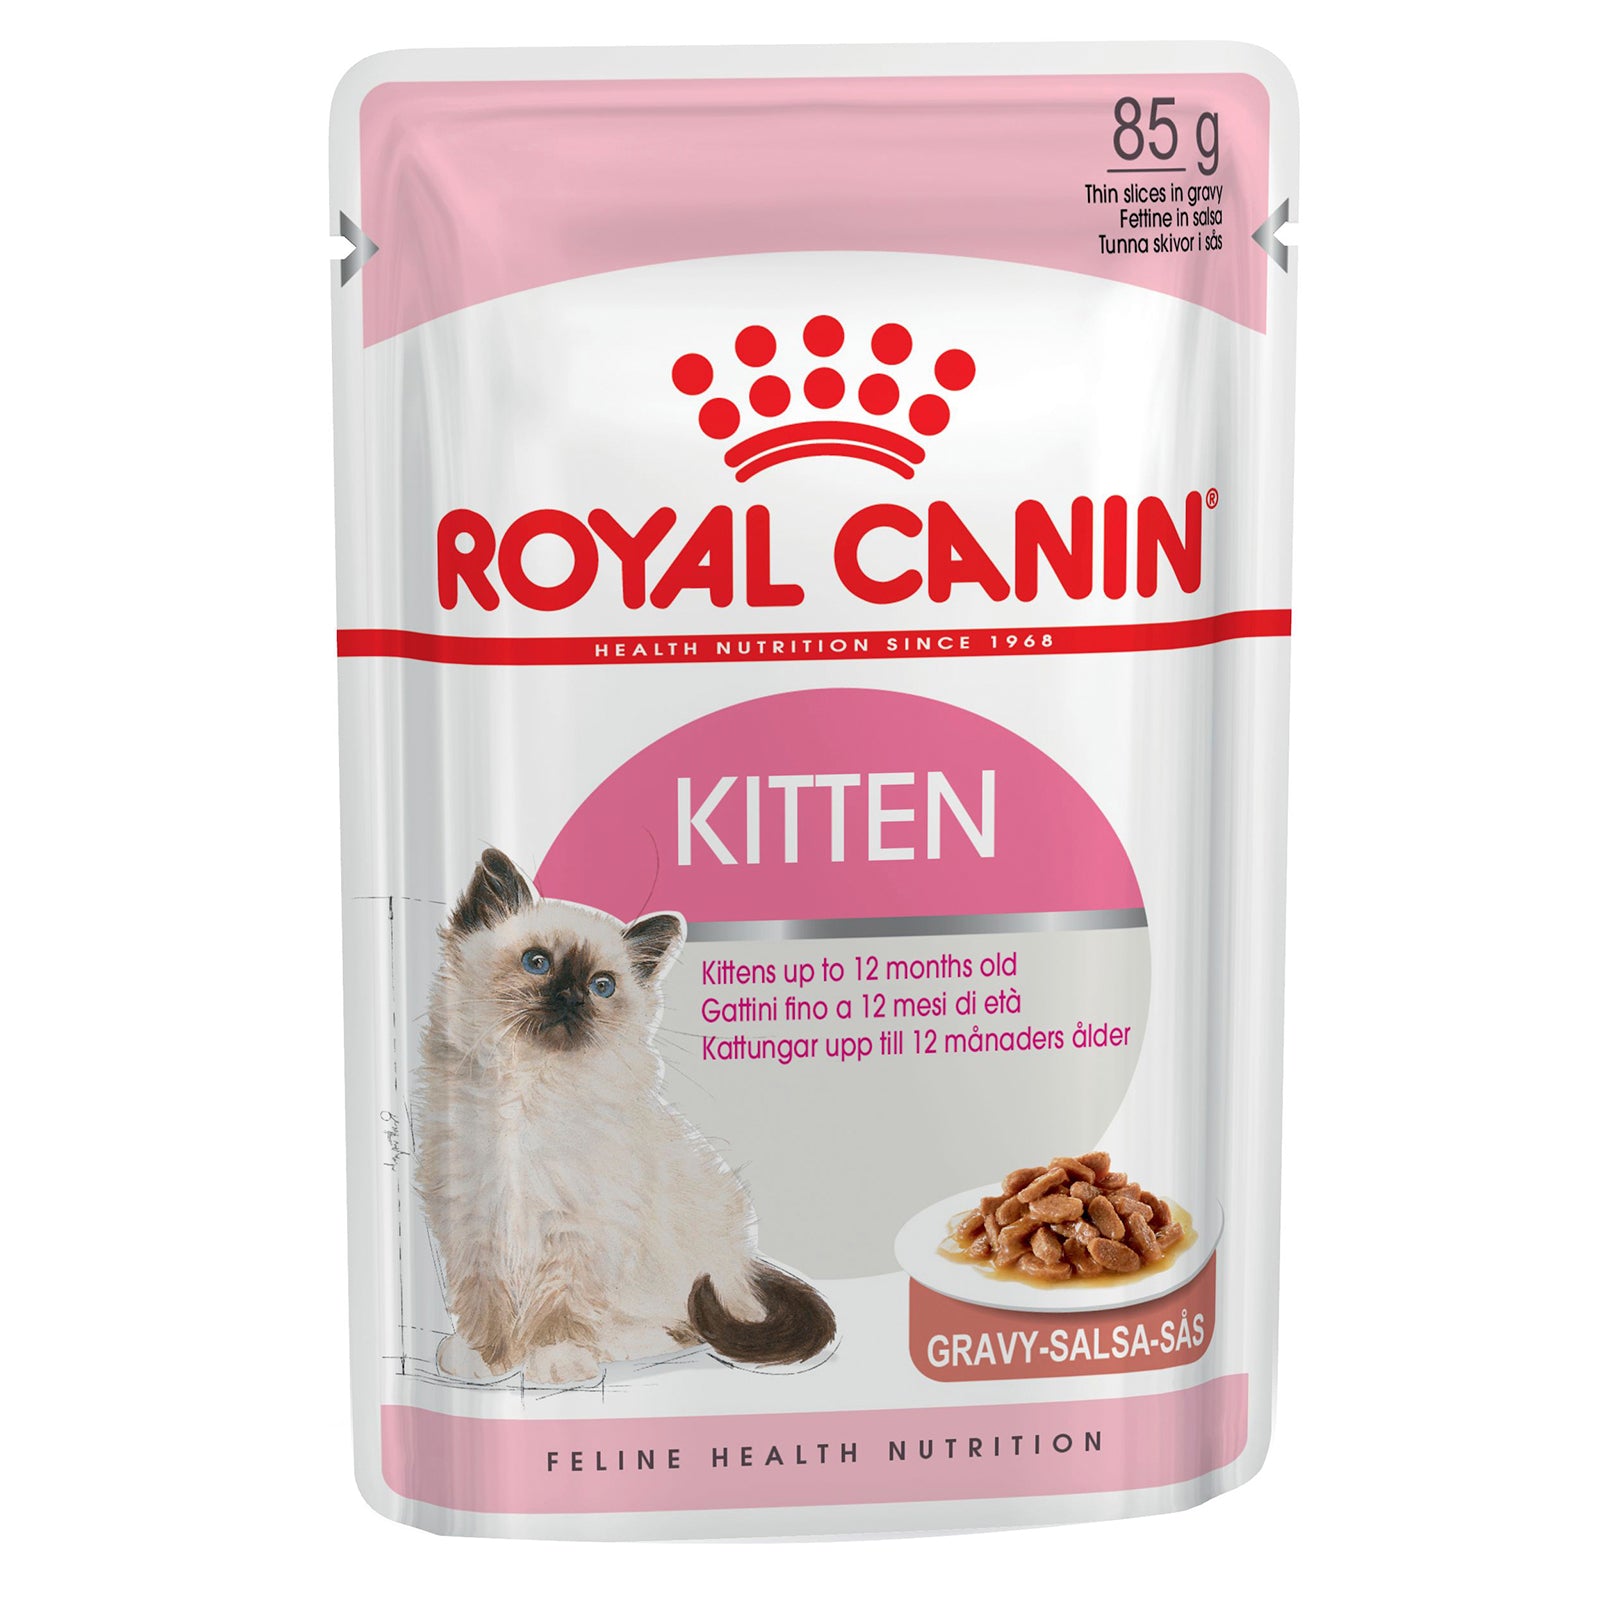 Royal Canin Cat Food Pouch Kitten in Gravy